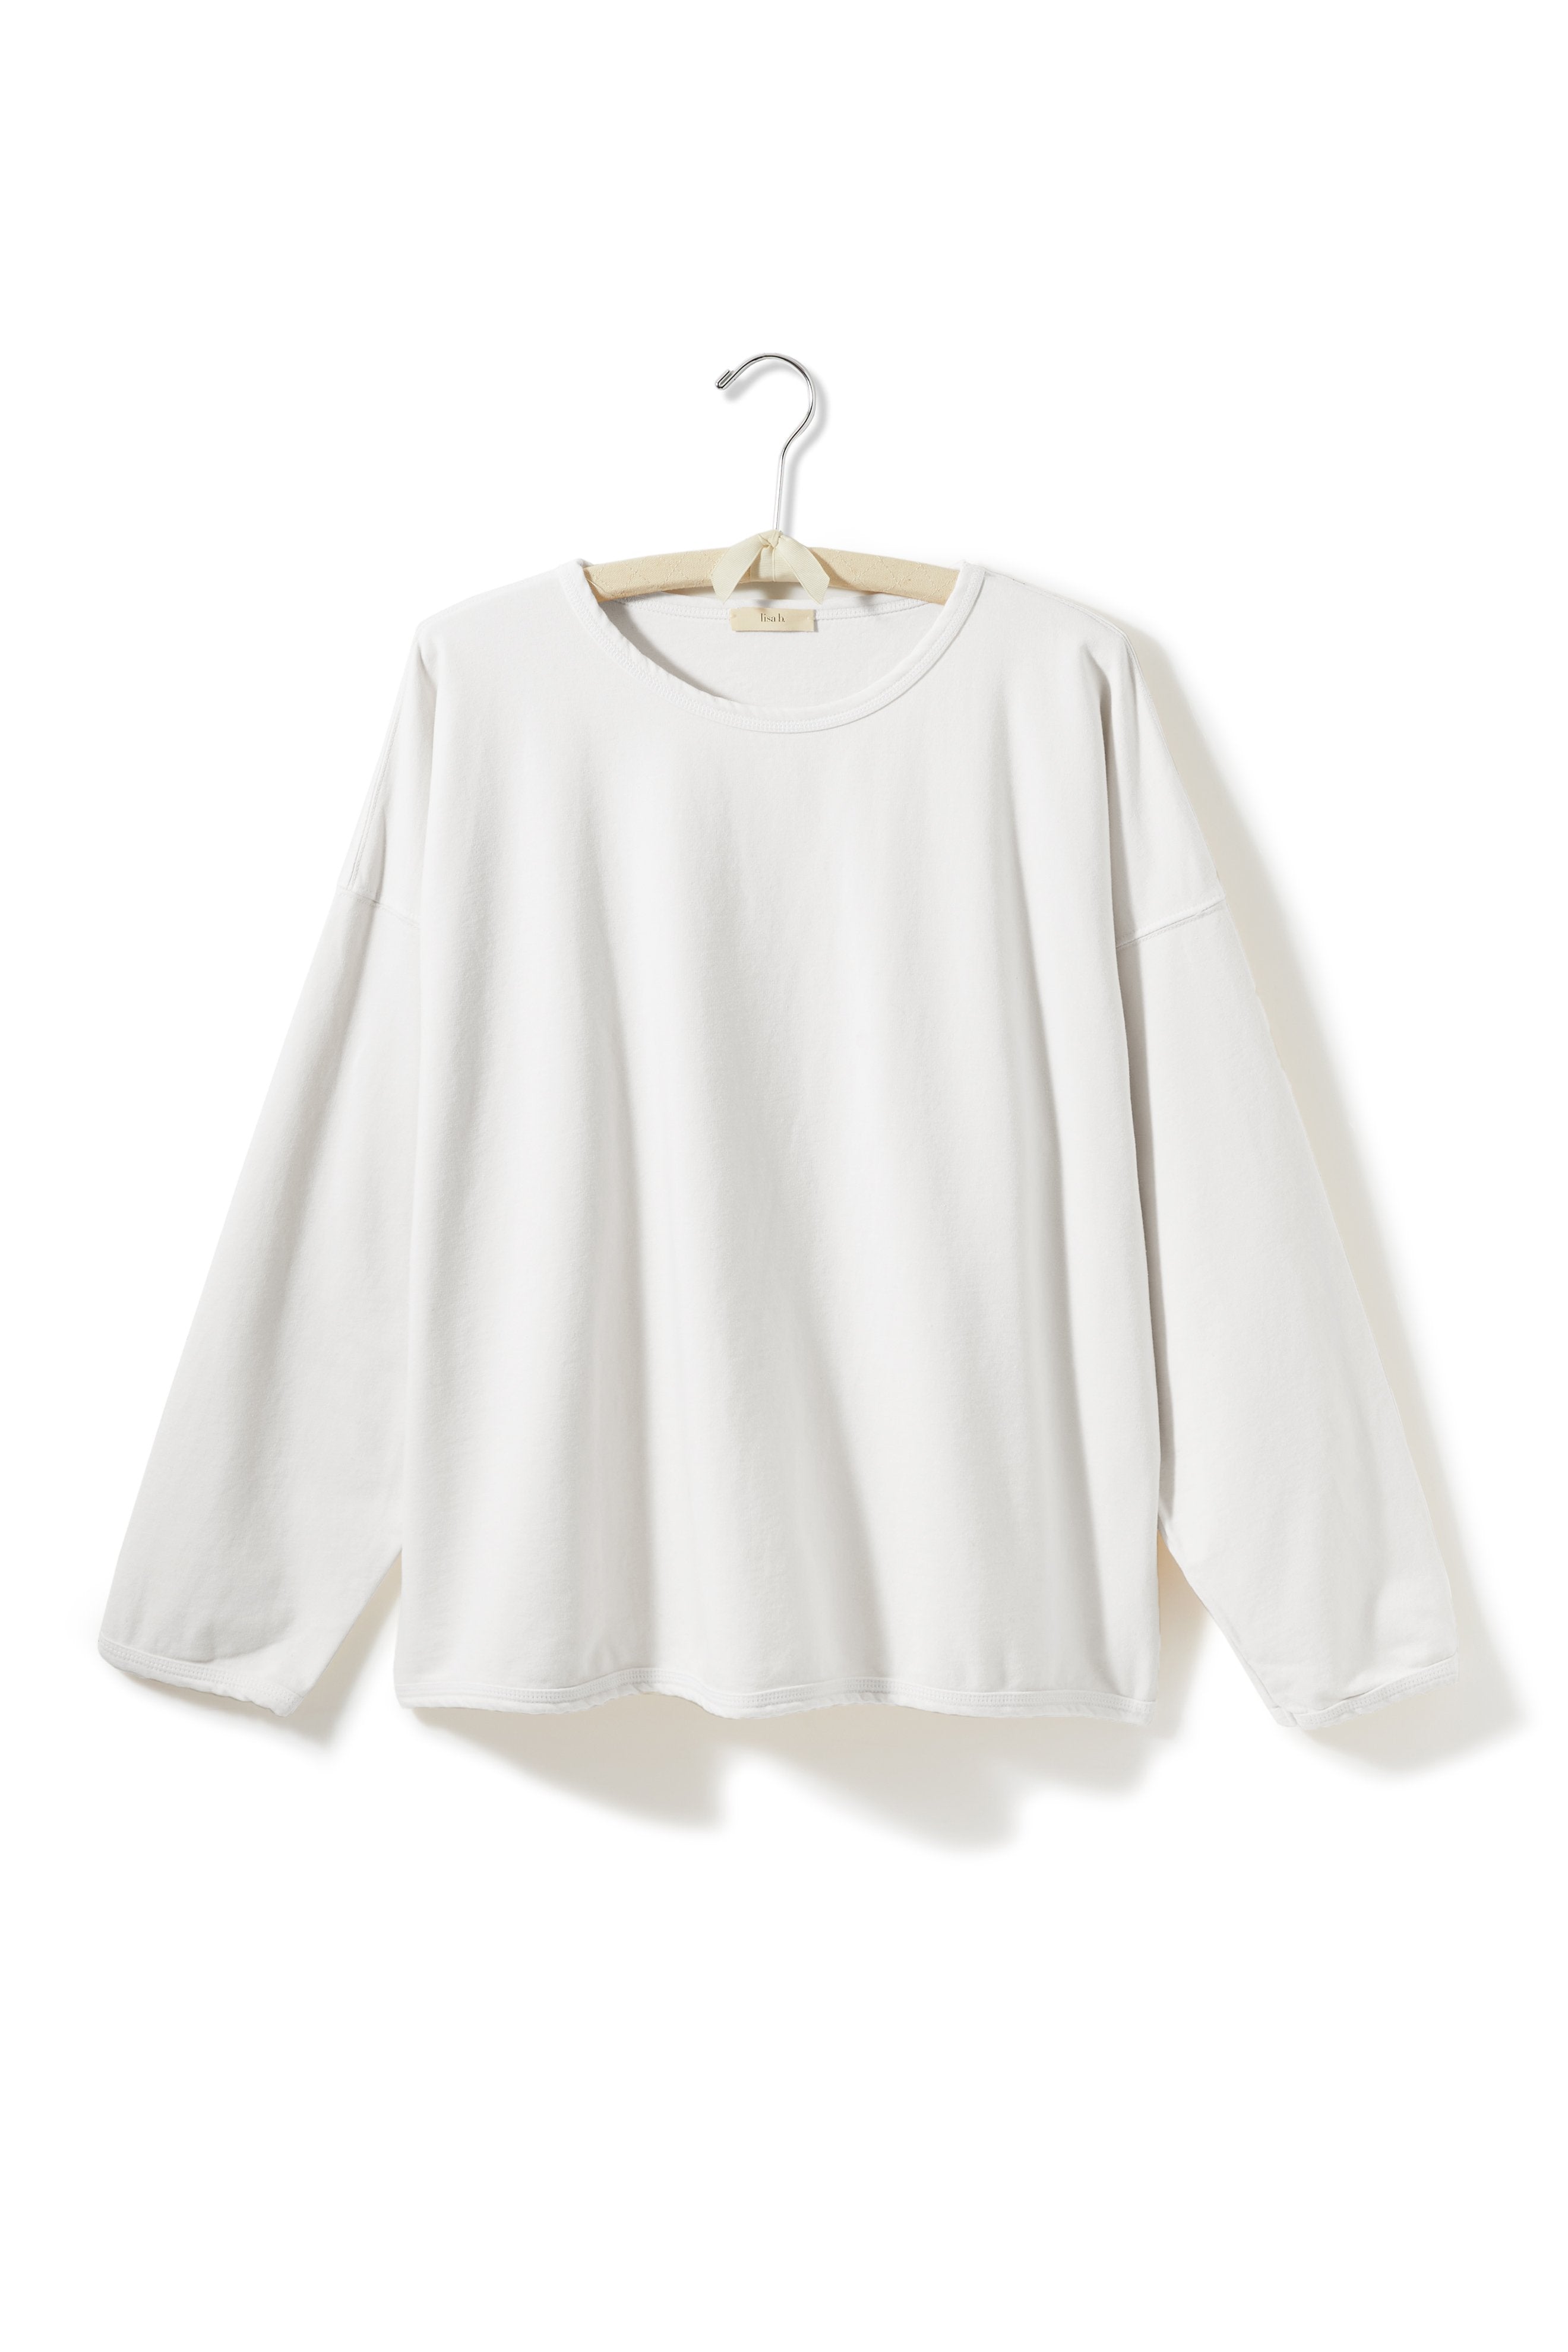 lounge shirt Cotton Knits lisa b. white one size 